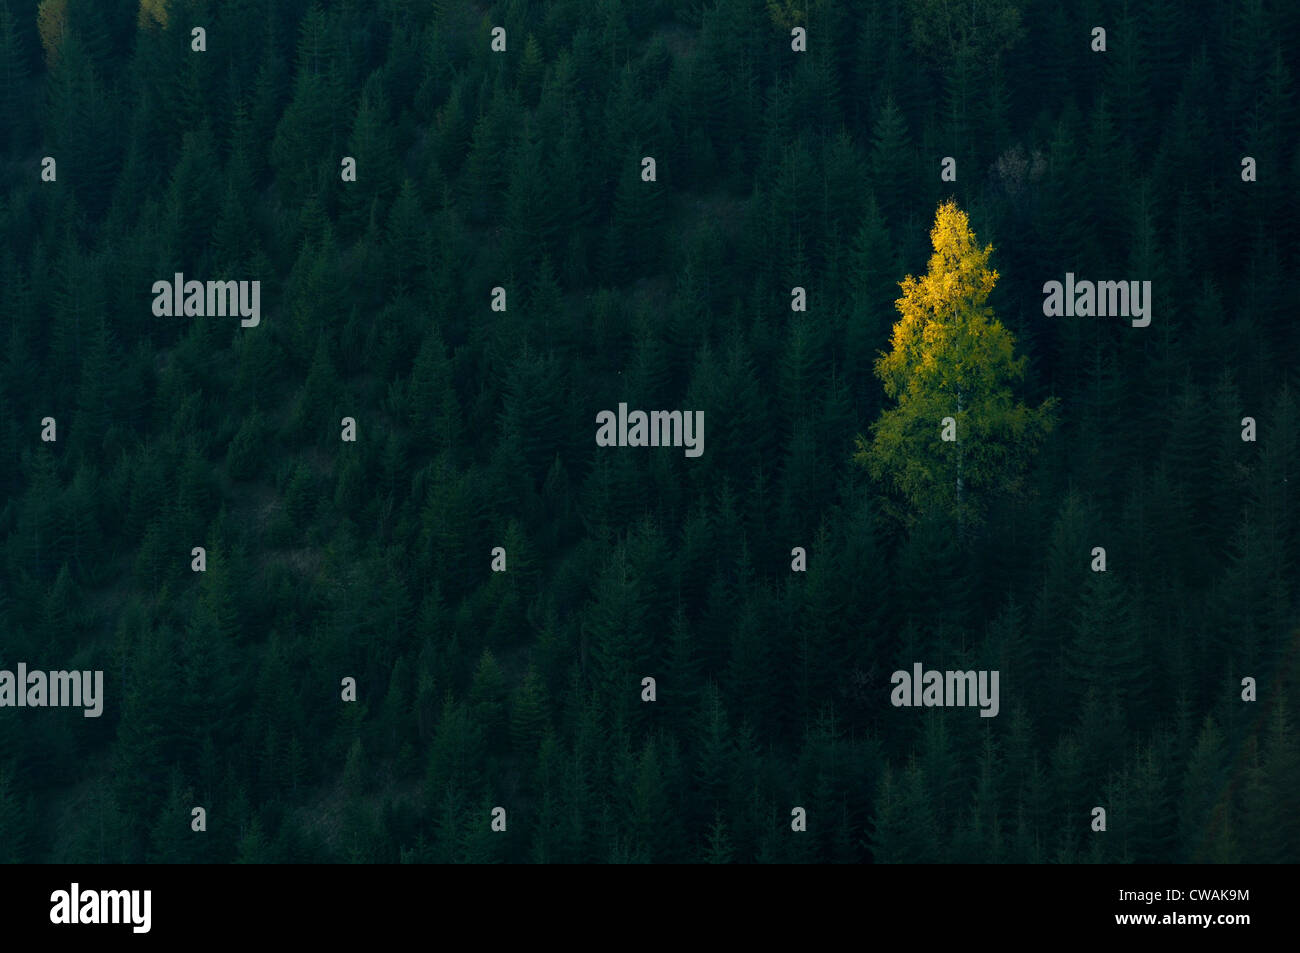 Ein Baum im Wald, beleuchtet Krasnik Dorf Bereich, Karpaten, Iwano-Frankowsk Gebiet, Ukraine Stockfoto